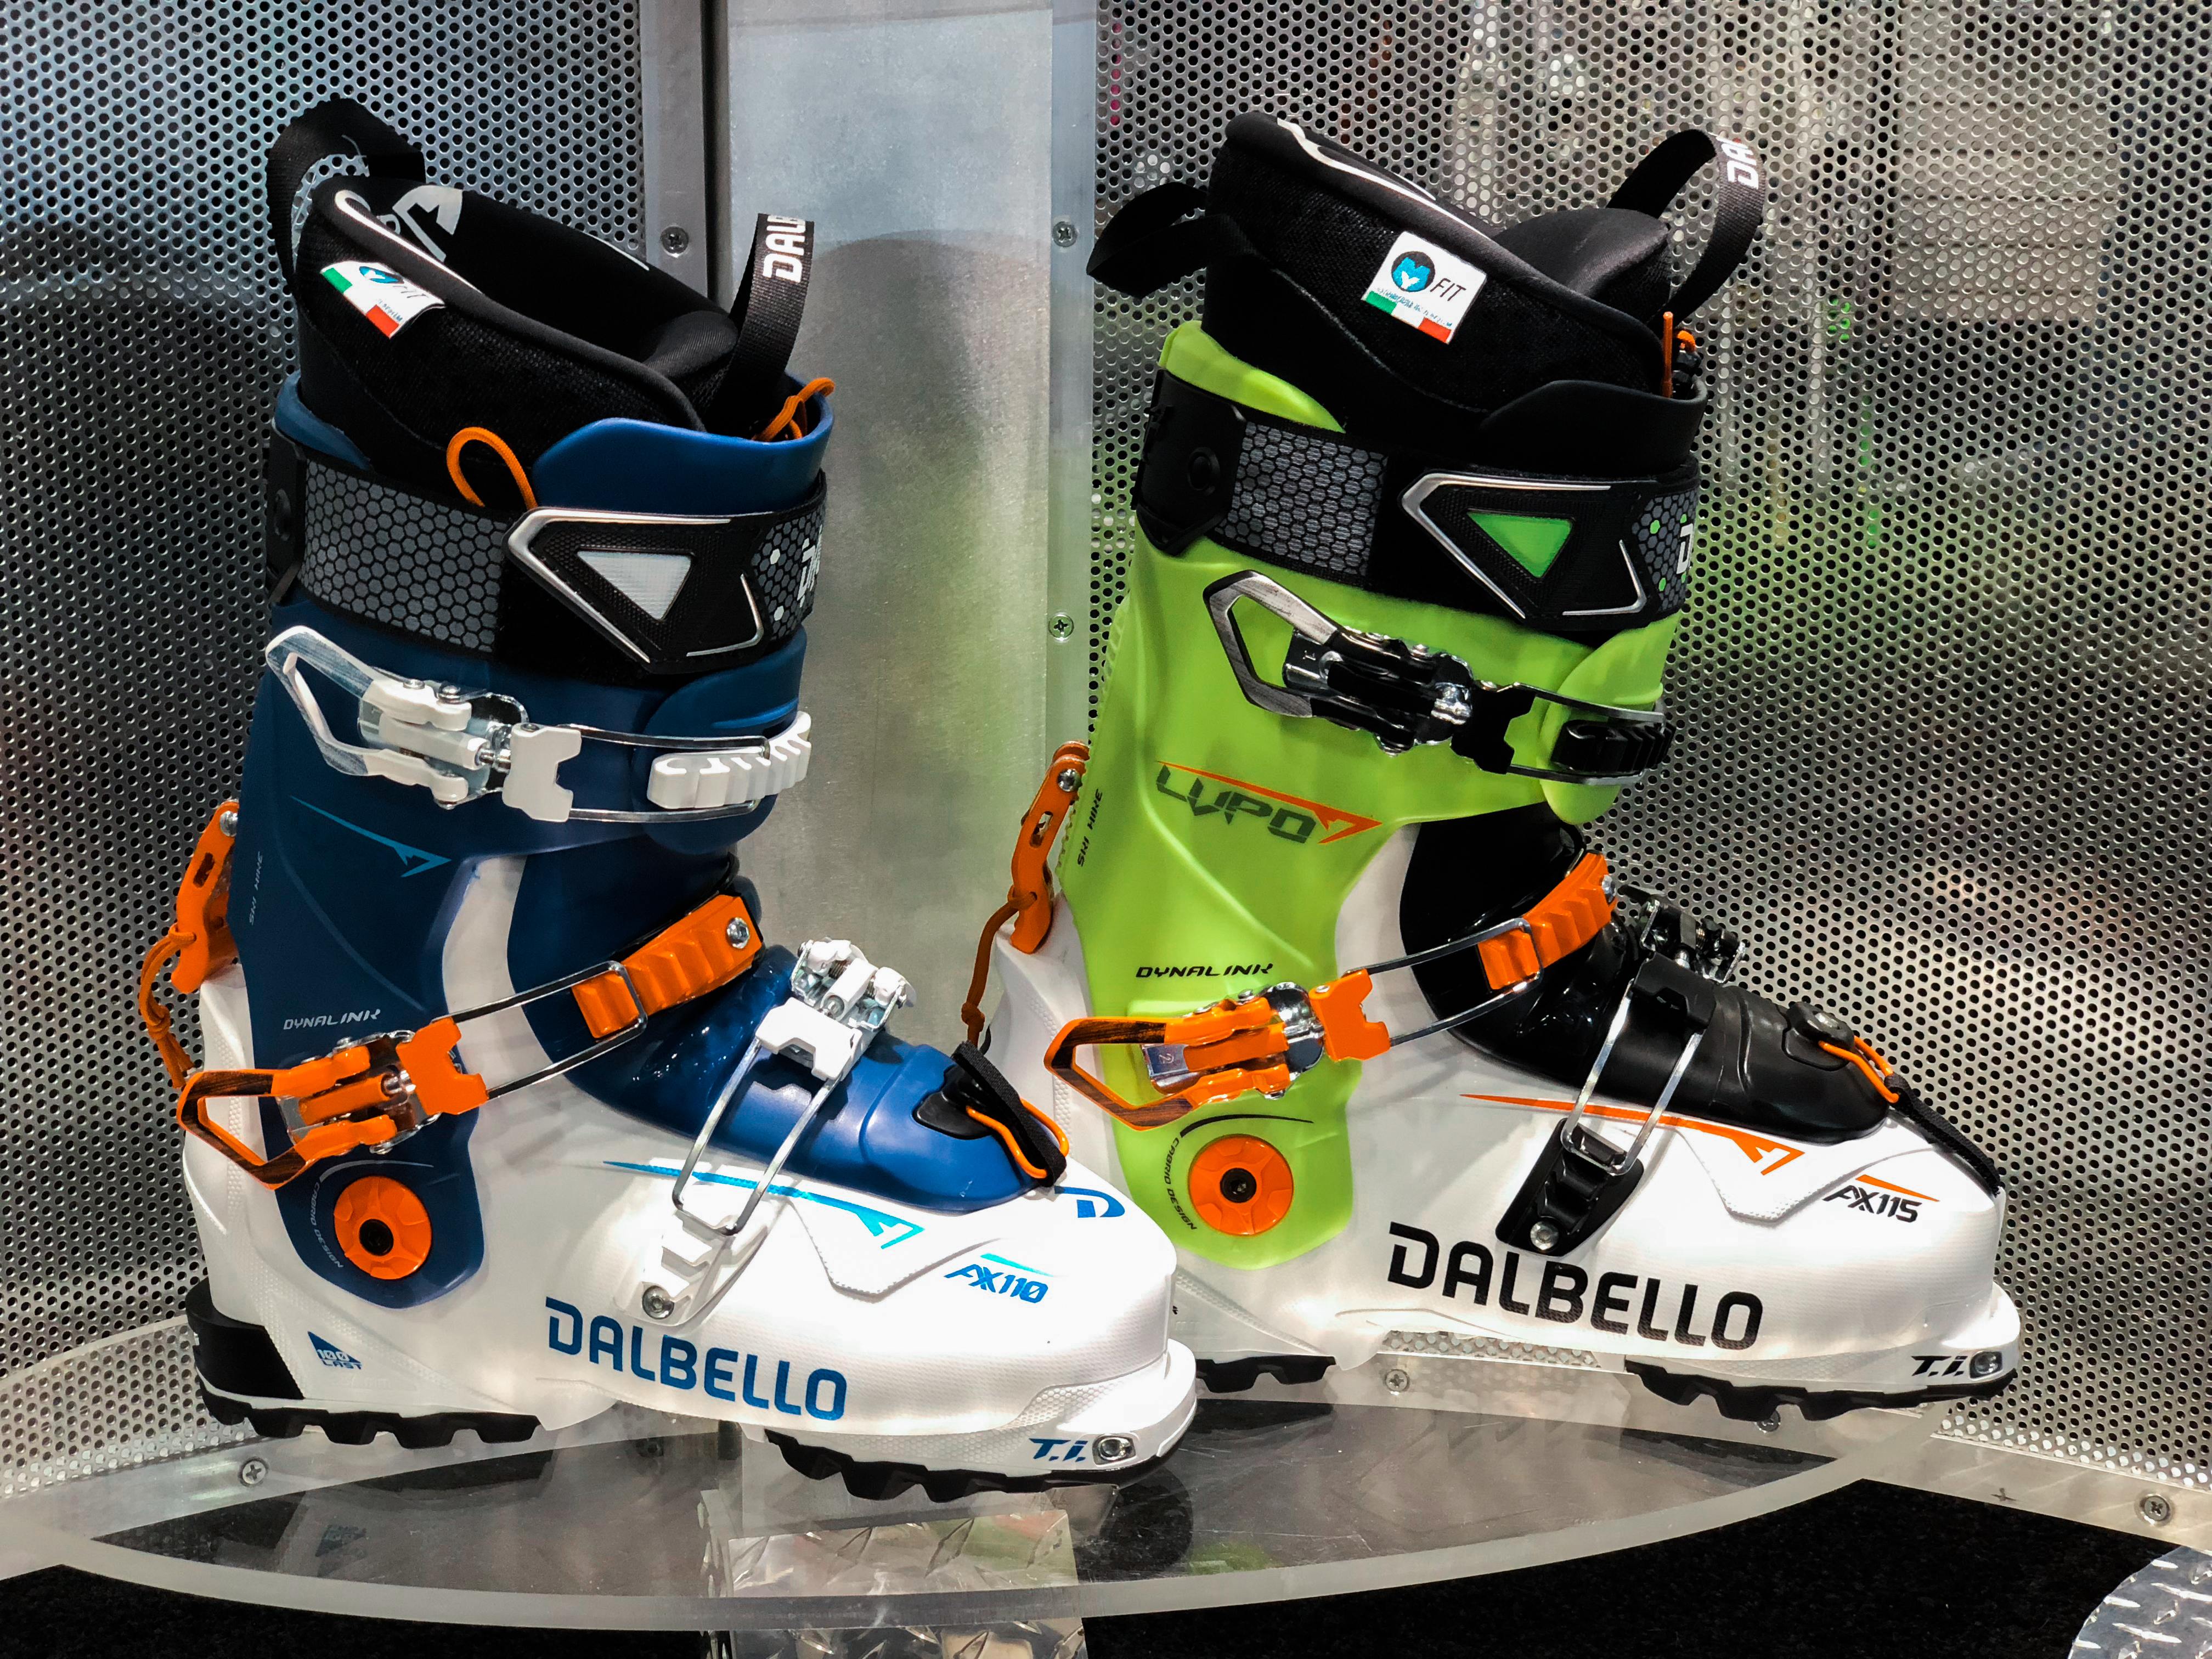 Dalbello Boots Lupo AX 115 - Ski Gear 